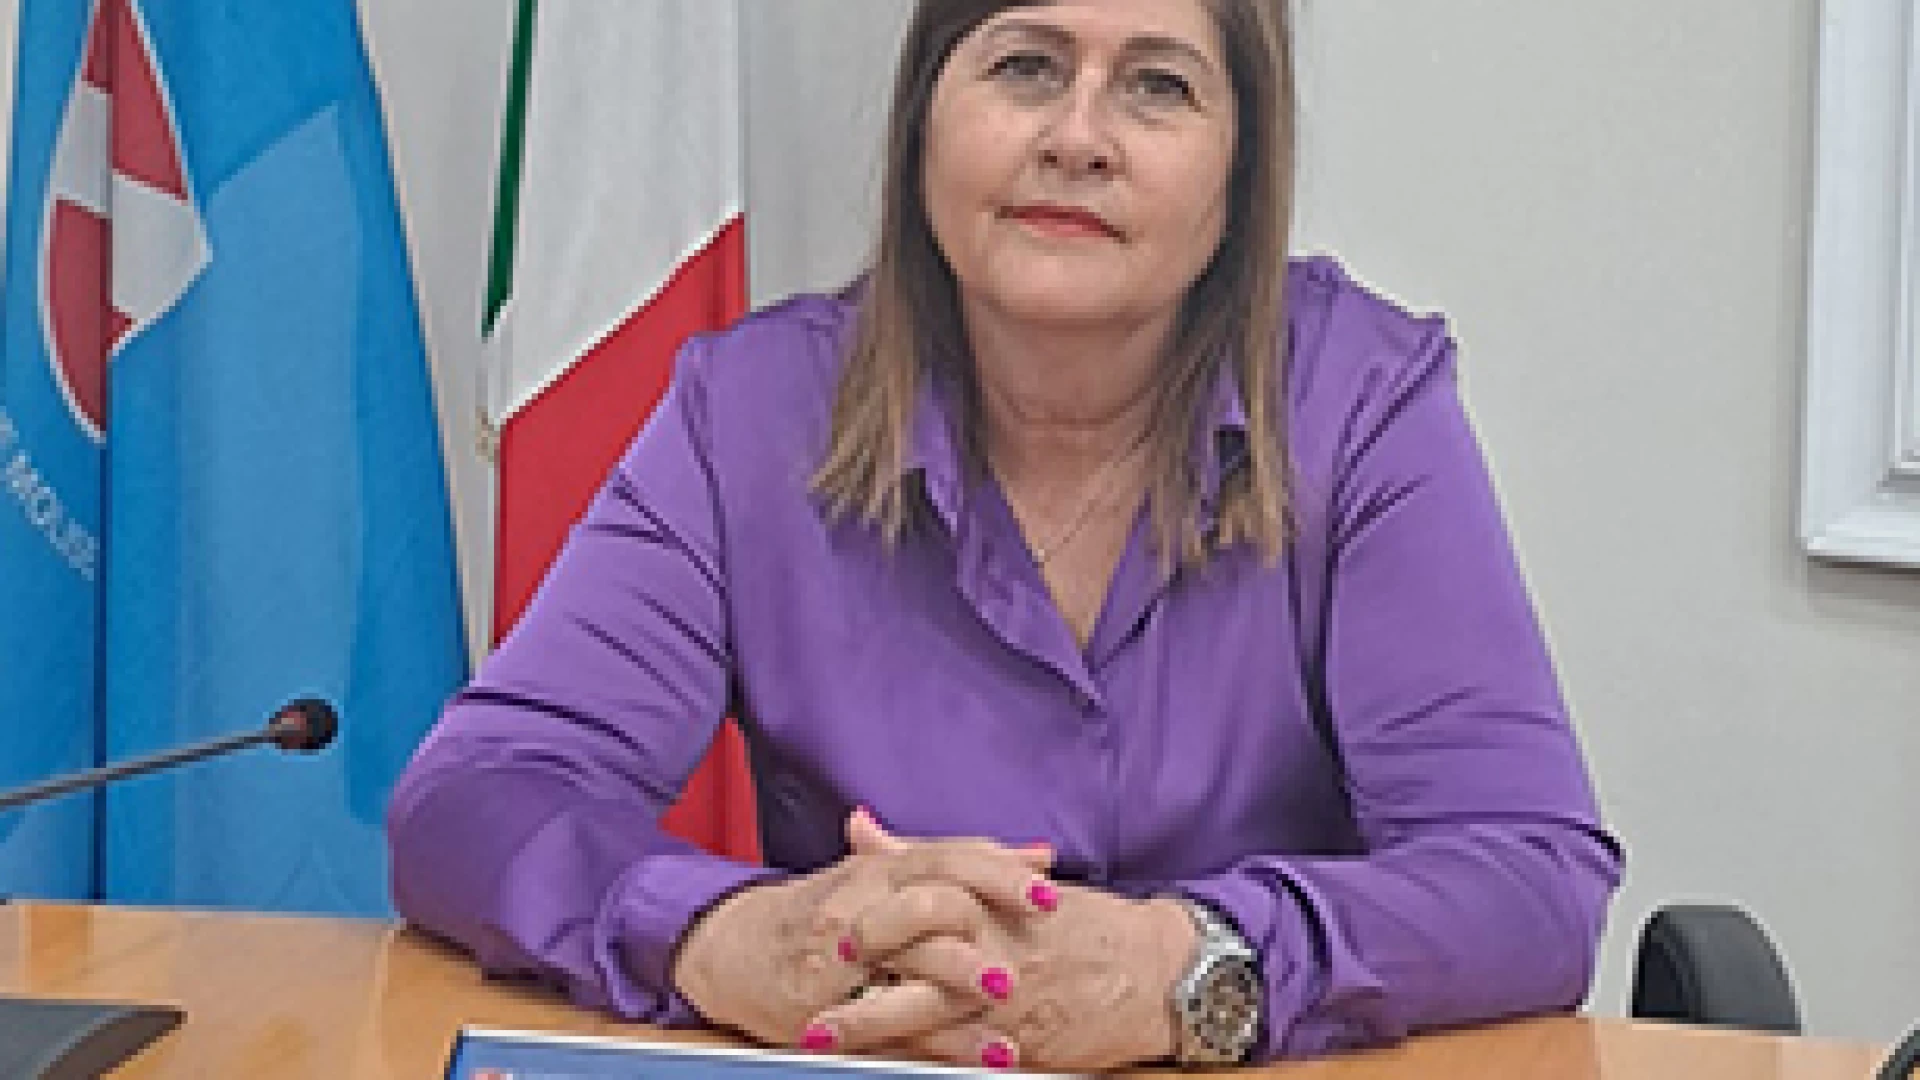 Stefania Passarelli , vicepresidente Consiglio regionale del Molise: "Lavoriamo per migliorare il Molise. Le minoranze ostacolano e non hanno visione".